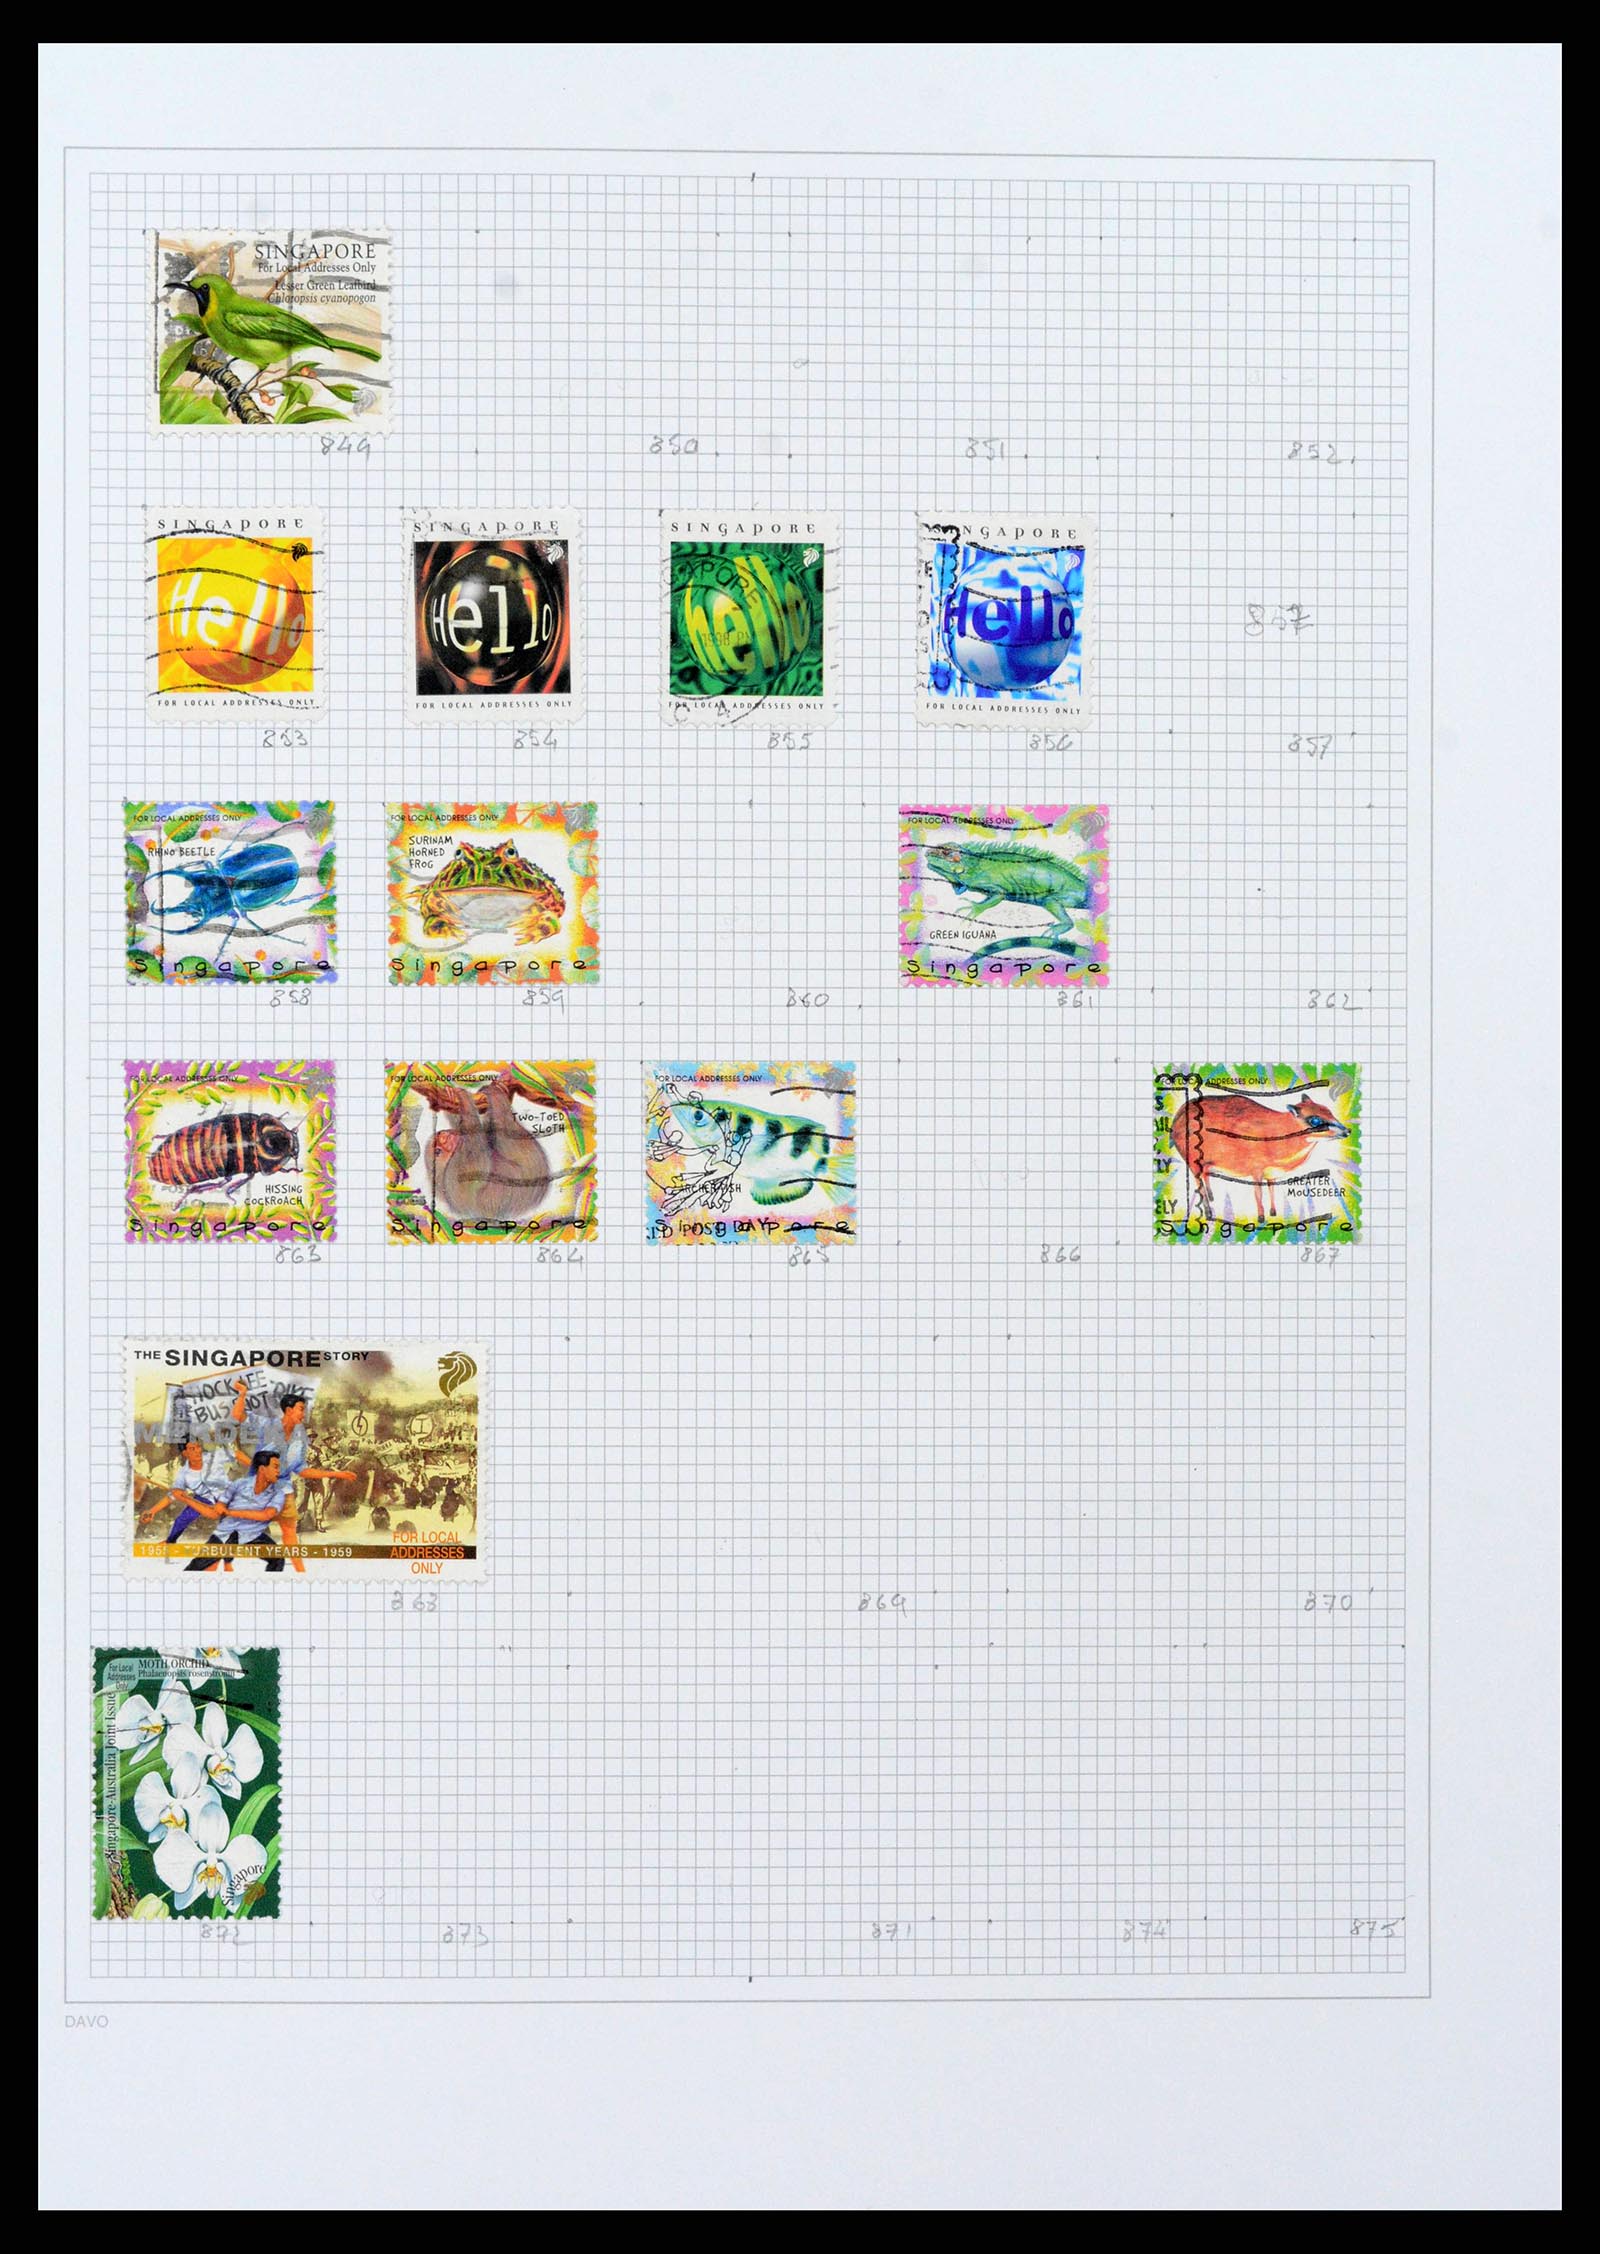 38158 0075 - Stamp collection 38158 Hong Kong 1862-1997.